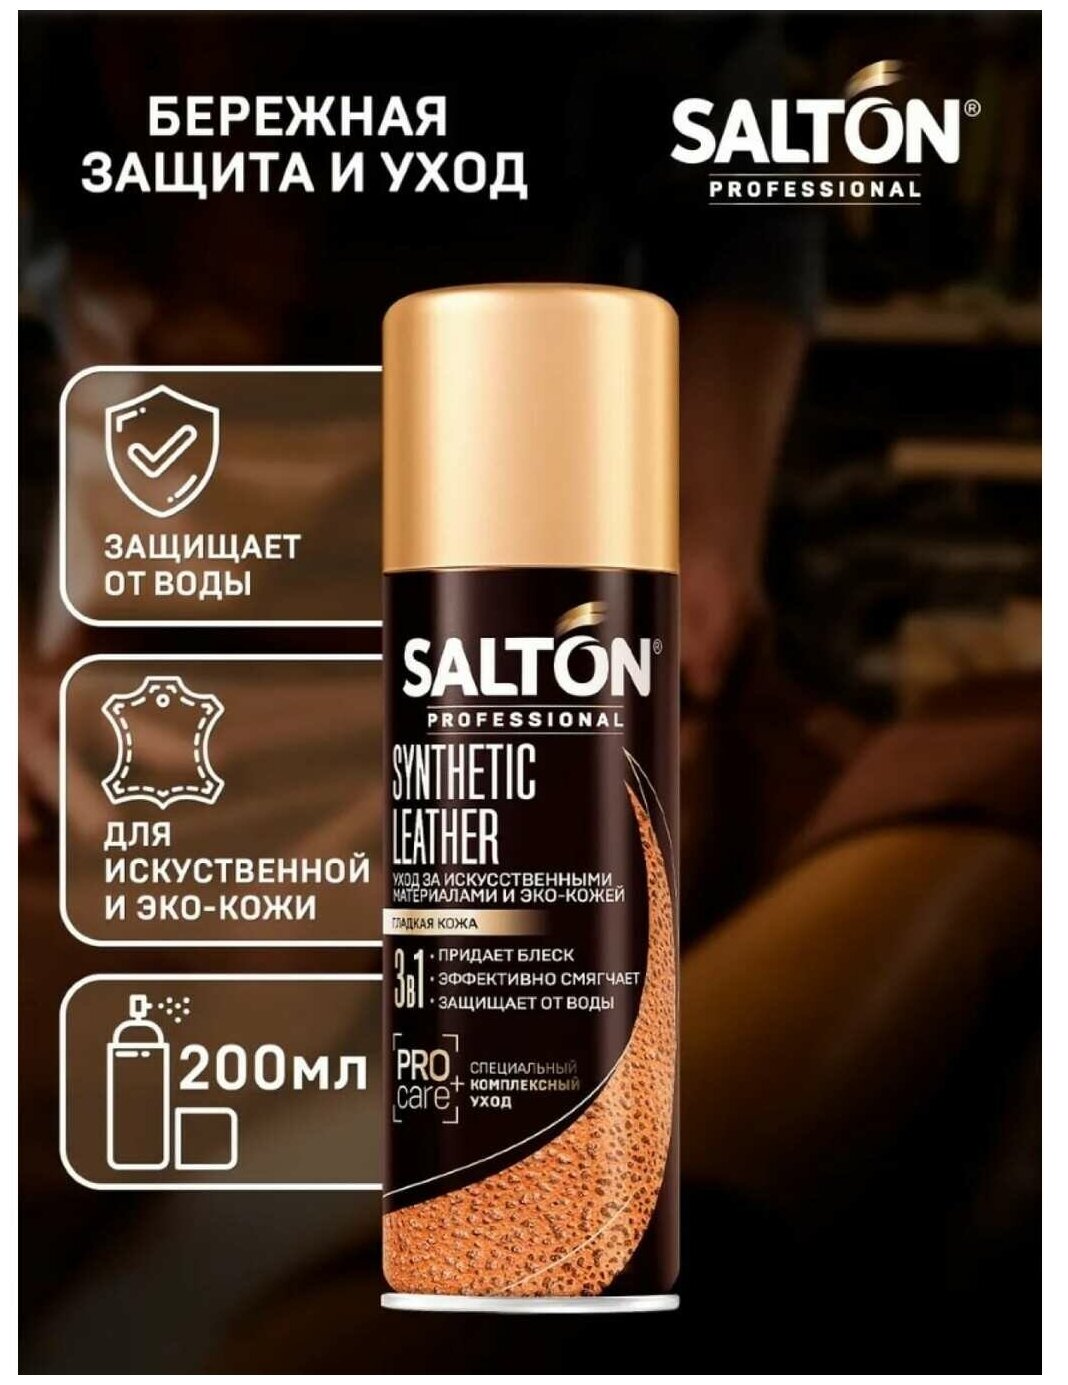 SALTON PROFESSIONAL Synthetic leather Средство для ухода за обувью из гладкой искусственной и эко-кожи, 200мл Бесцветный (12) SALTON - фотография № 7